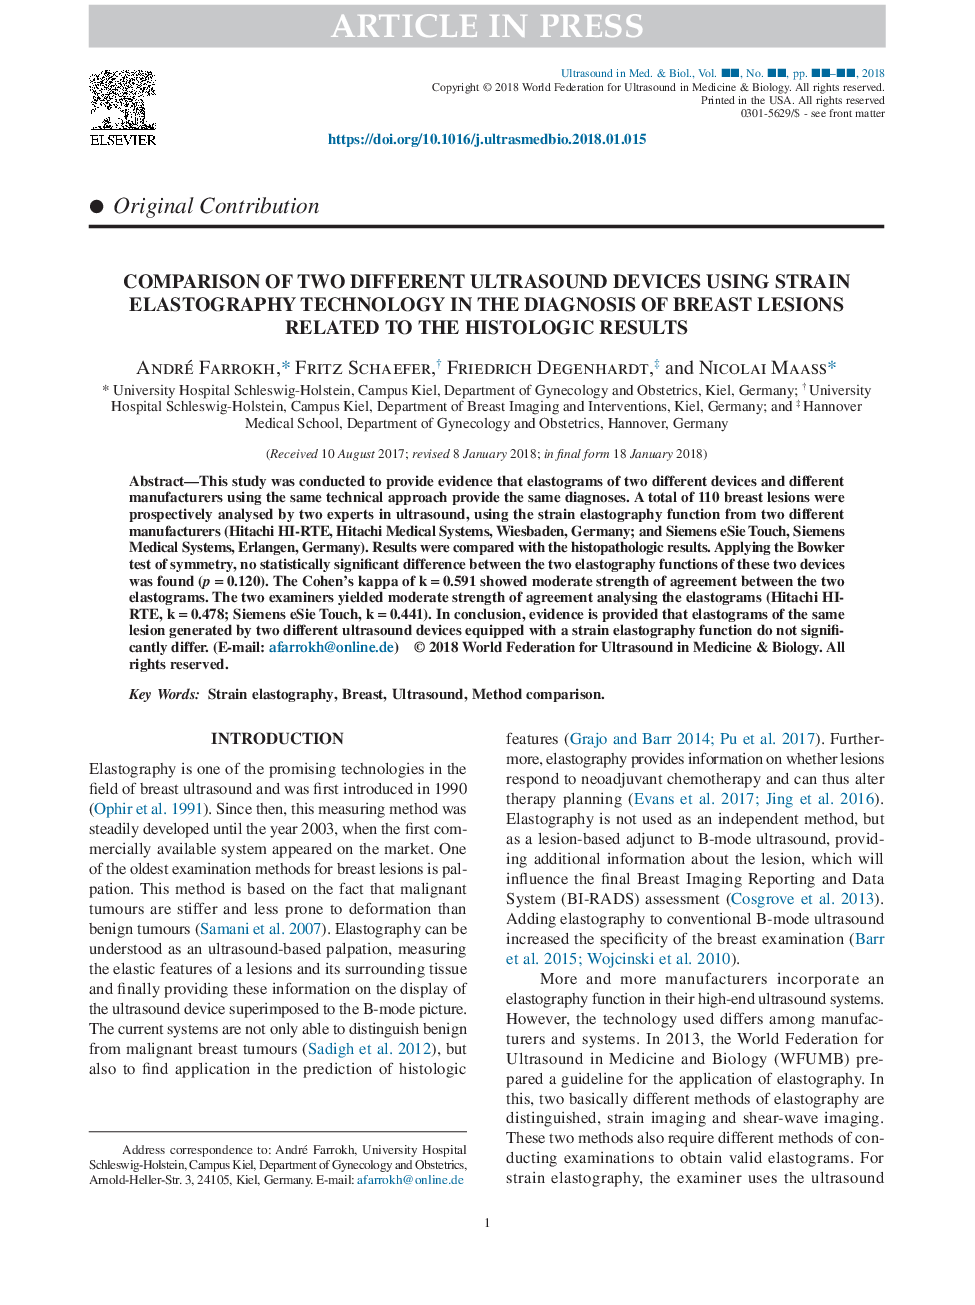 مقایسه دو دستگاه سونوگرافی متفاوت با استفاده از تکنیک انعطاف پذیری در تشخیص ضایعات پستان مربوط به نتایج بافت شناسی 